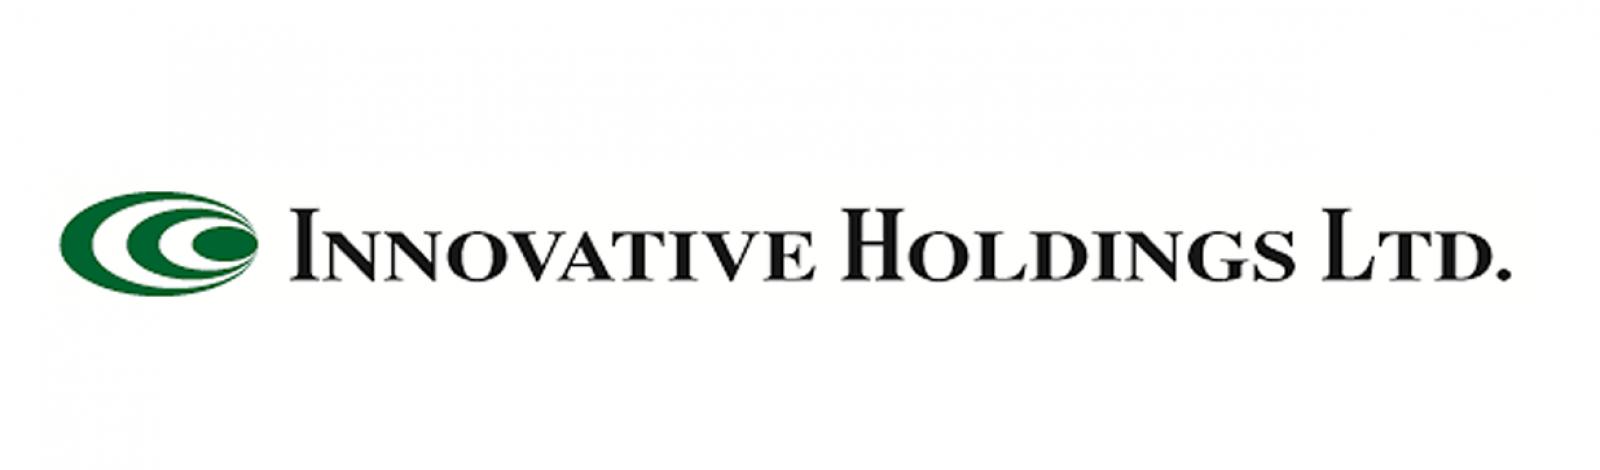 Innovative Holdings Ltd banner